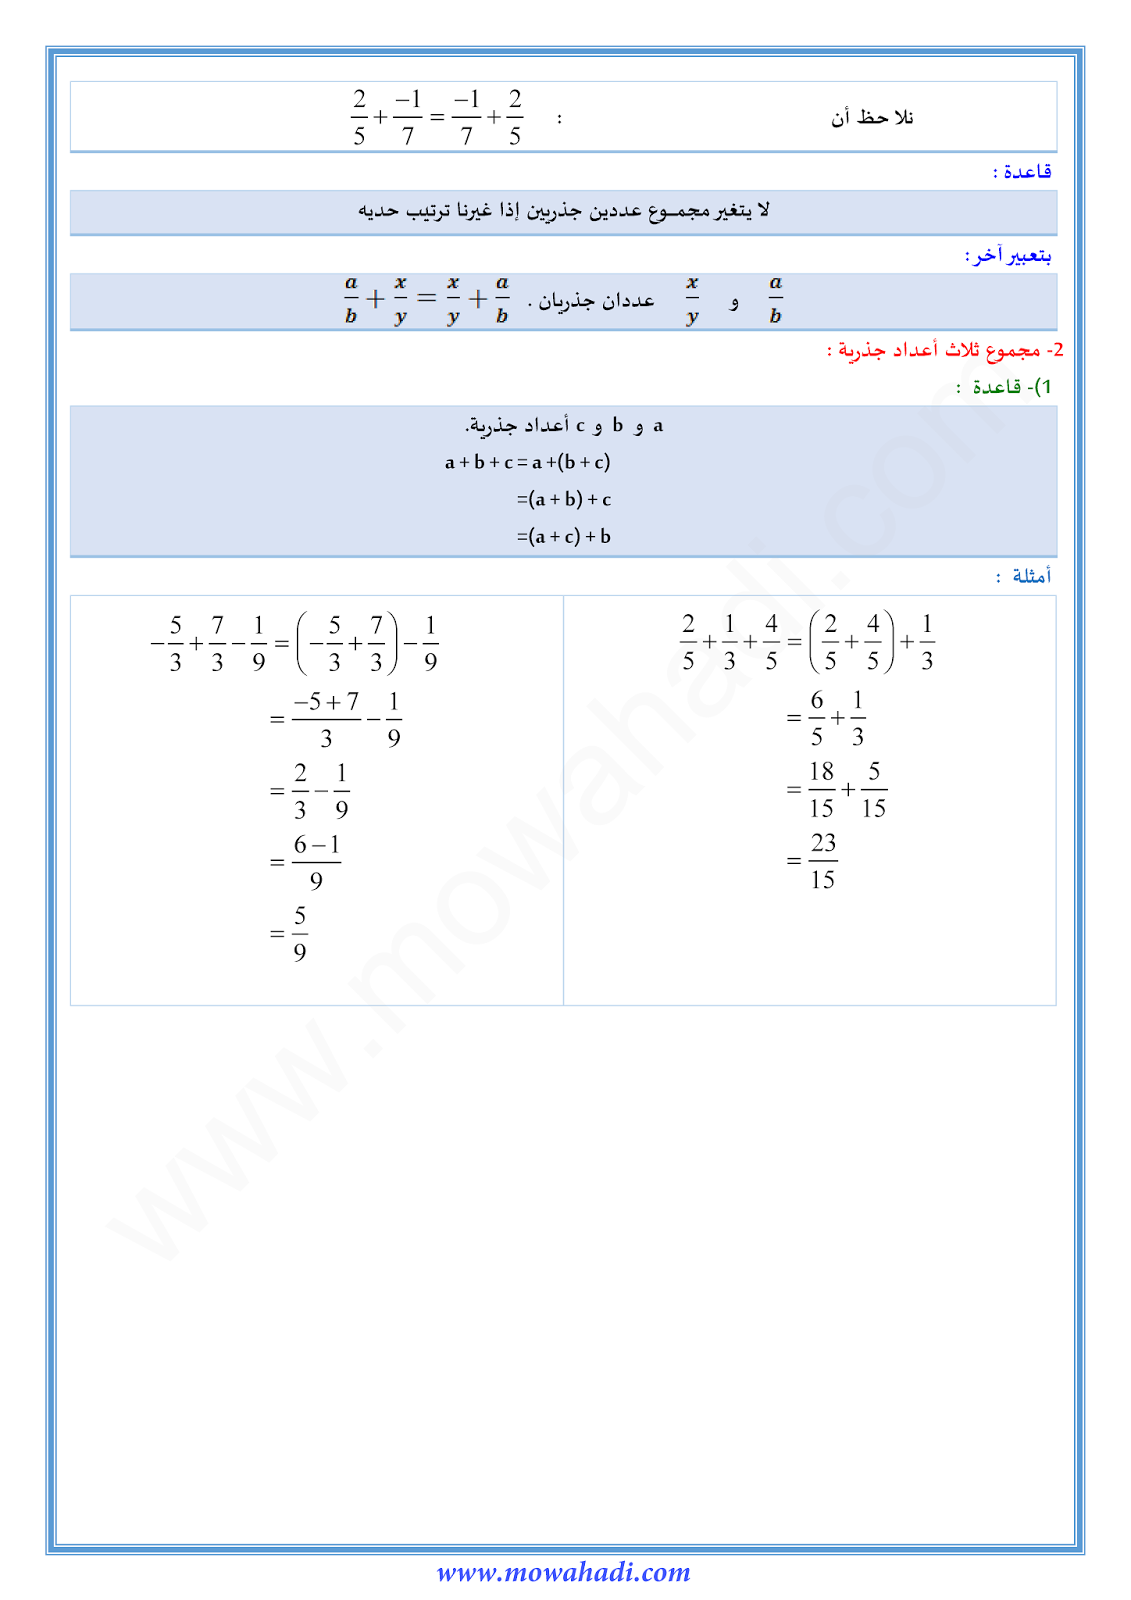 درس جمع و طرح عددين جذريين للسنة الثانية اعدادي في مادة الرياضيات 3-cours-math2_002